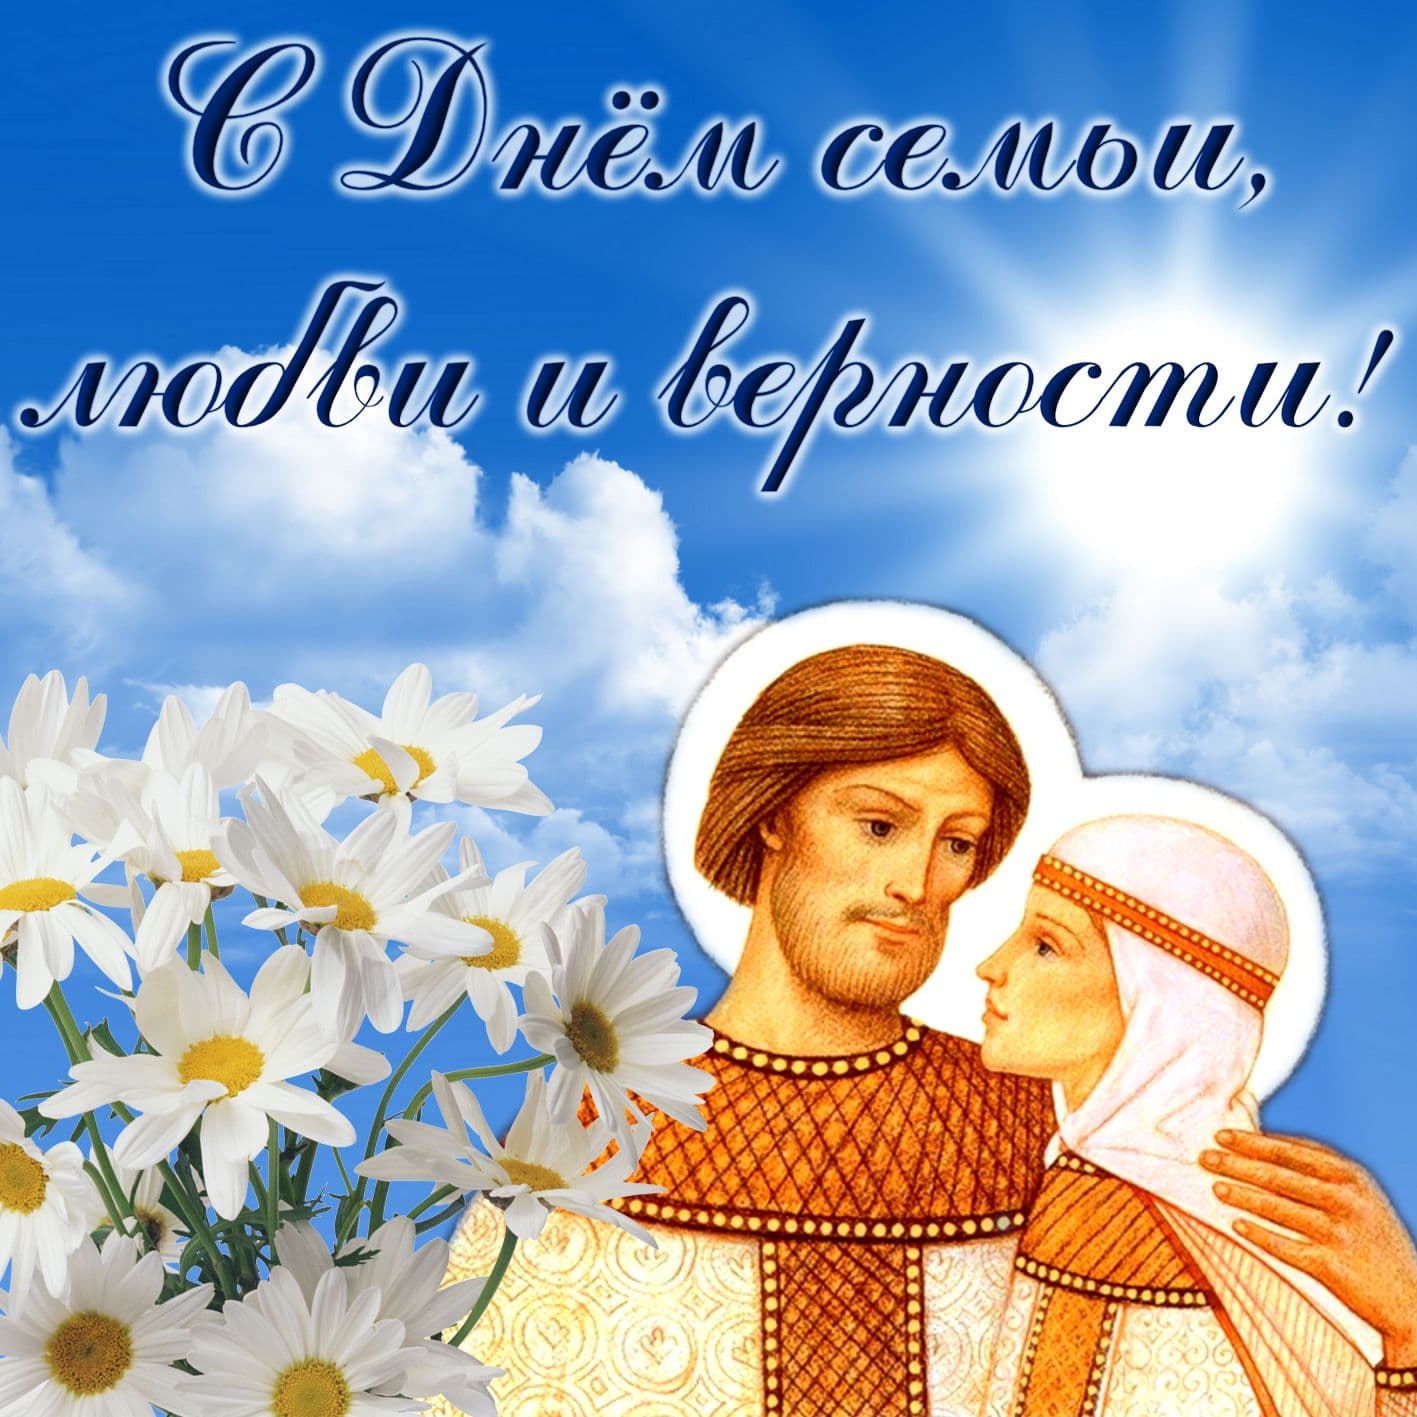 Православная открытка с днем семьи, любви и верности